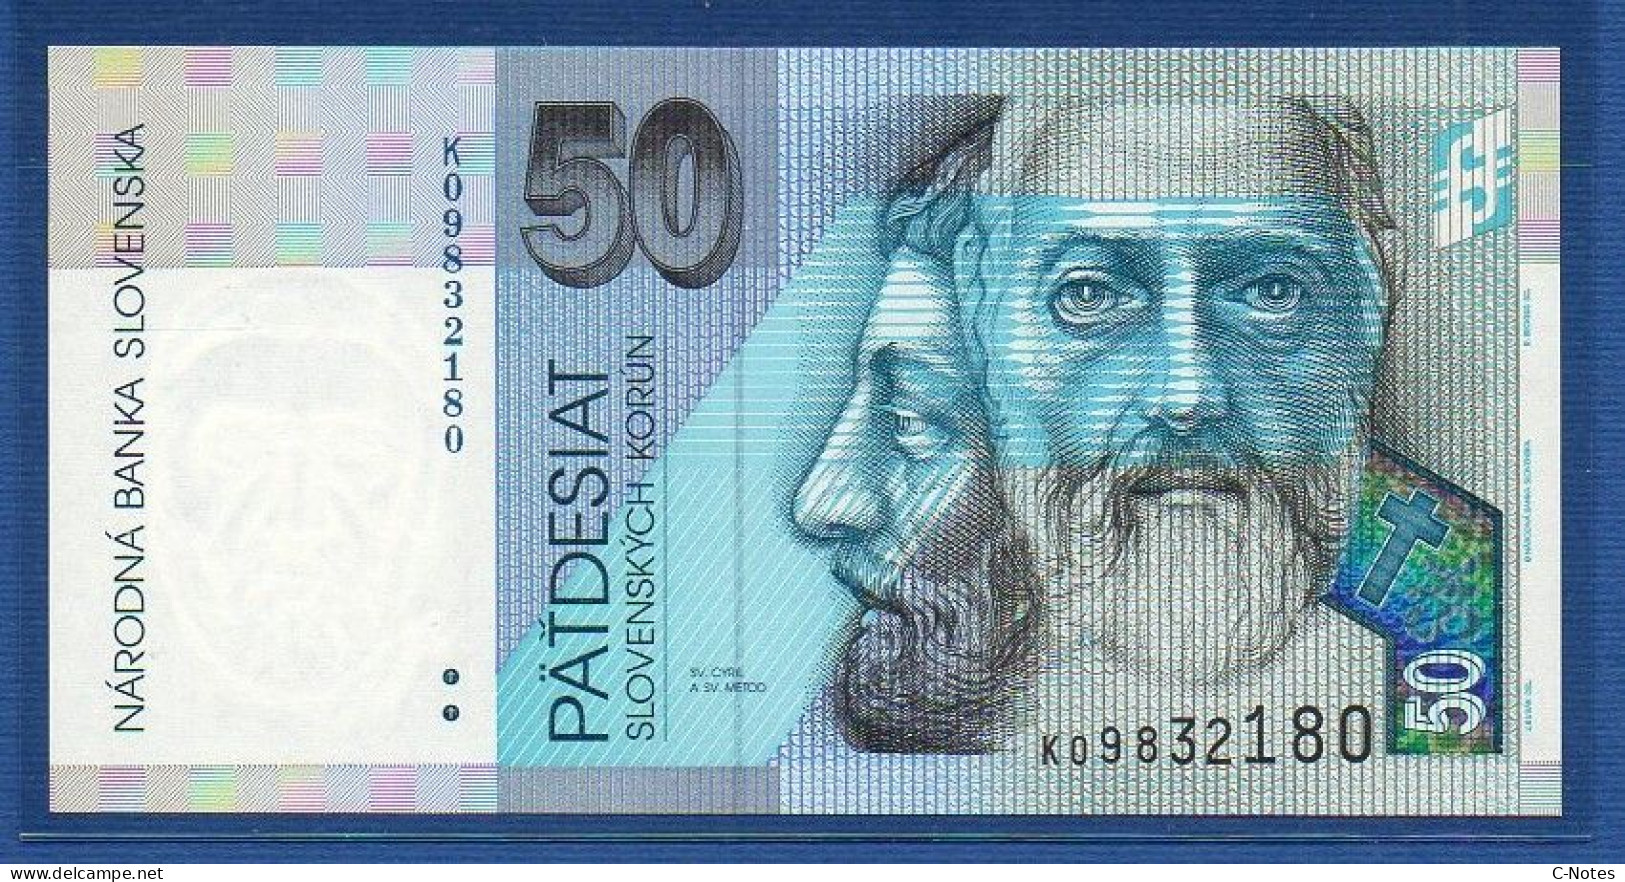 SLOVAKIA - P.21d – 50 Slovenských Korún 2002 UNC, S/n K09832180 - Slovacchia